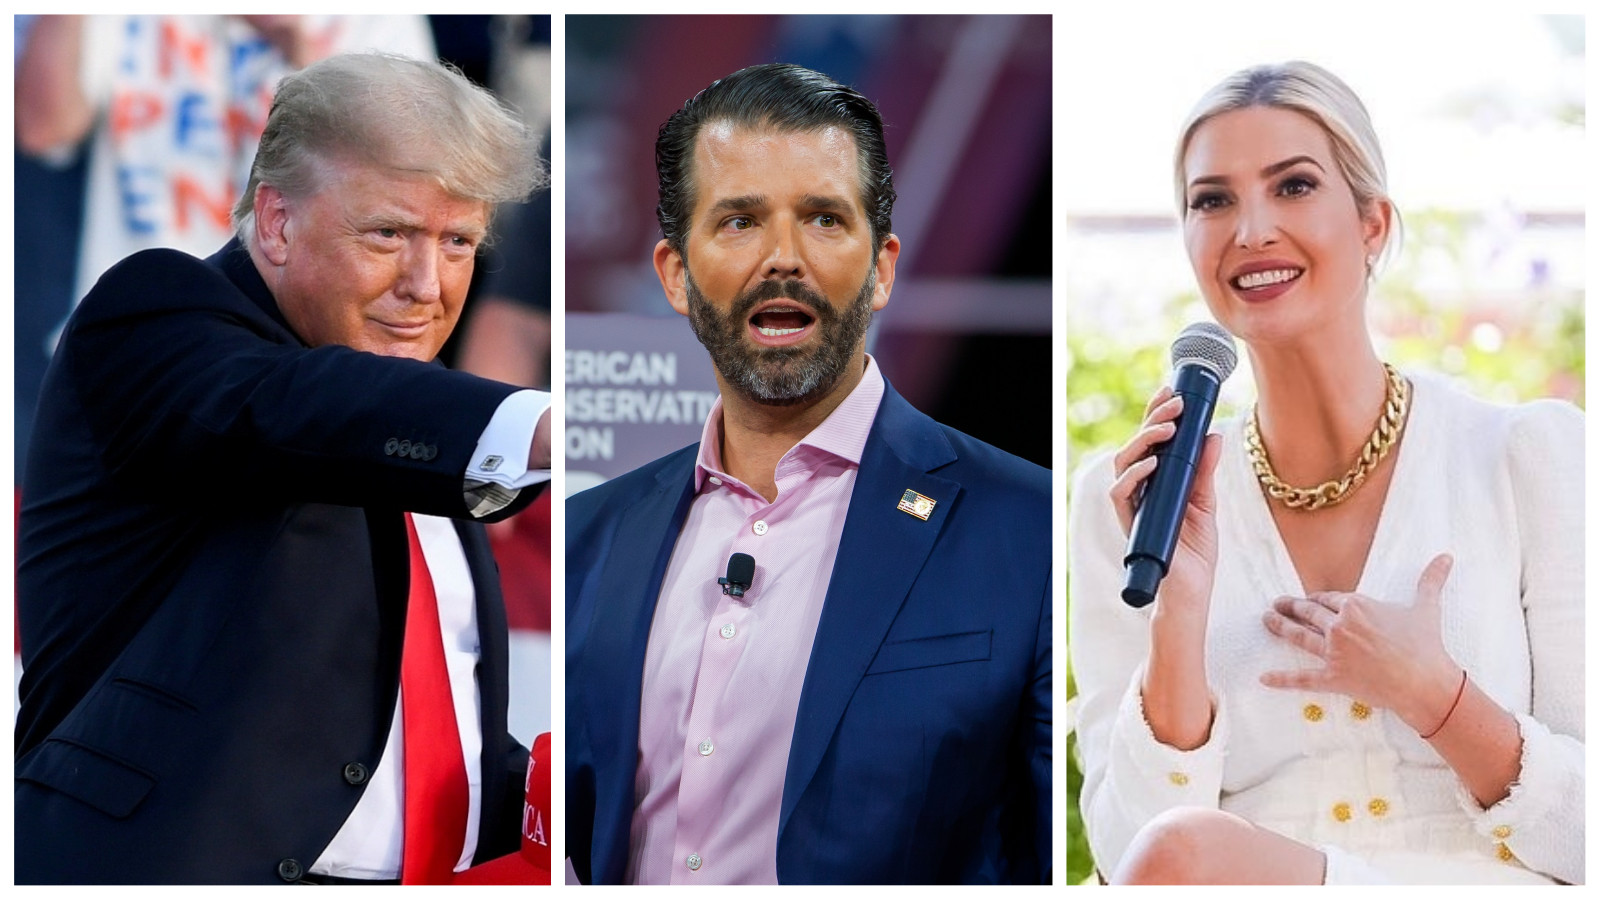 From left, Donald Trump, Donald Trump Jnr and Ivanka Trump. Photos: EPA-EFE, Reuters, @ivankatrump / Instagram